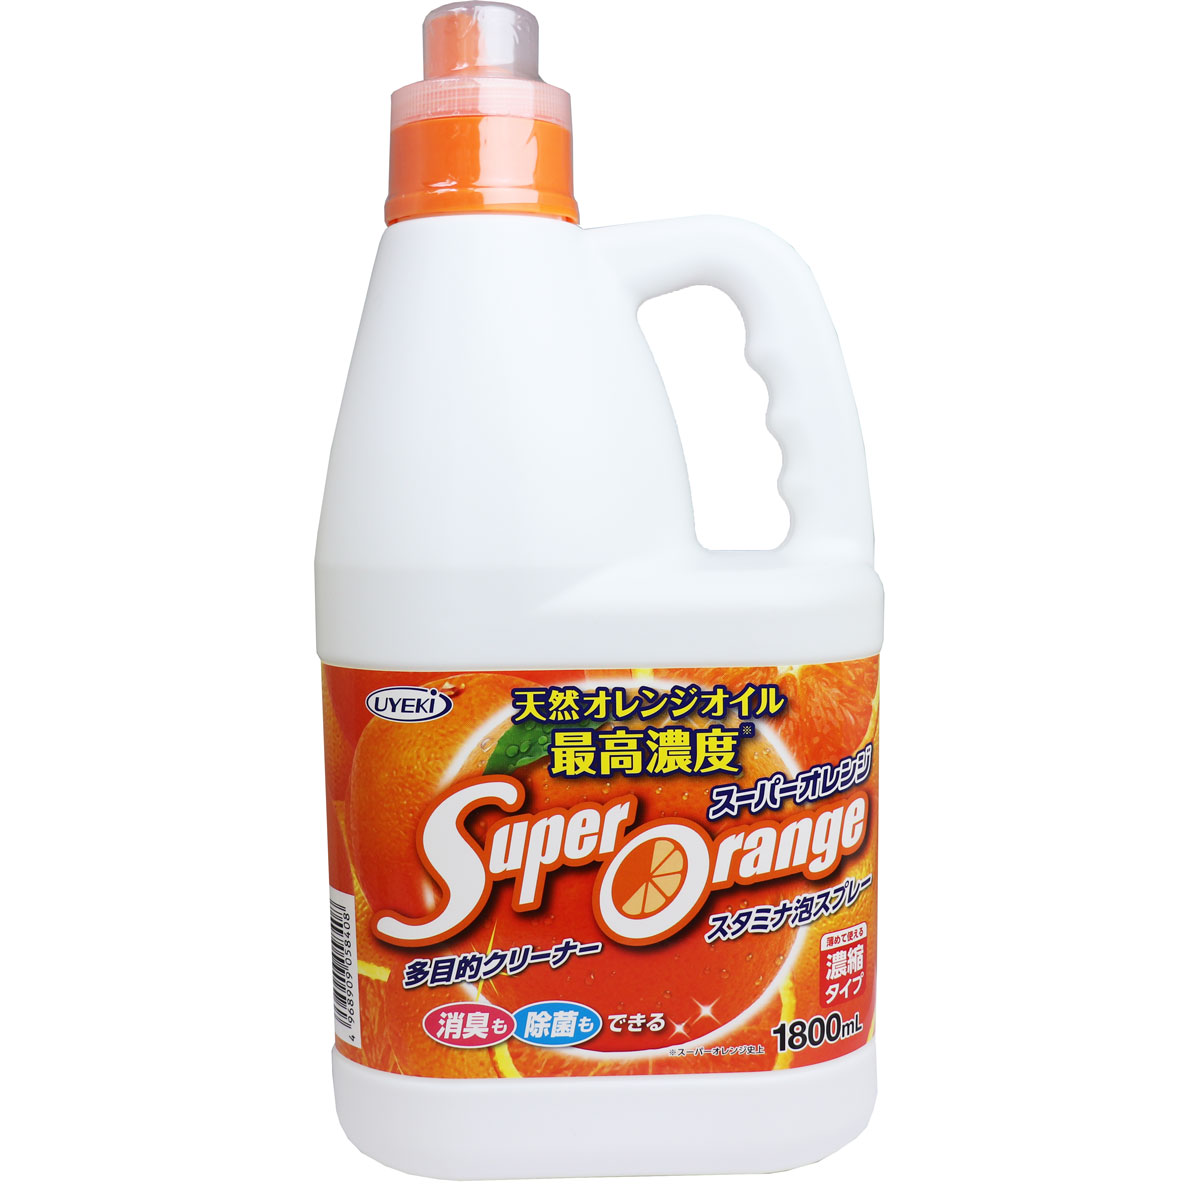 [廃盤]多目的クリーナー スーパーオレンジ 消臭除菌 スタミナ泡スプレー 業務用 1800mL